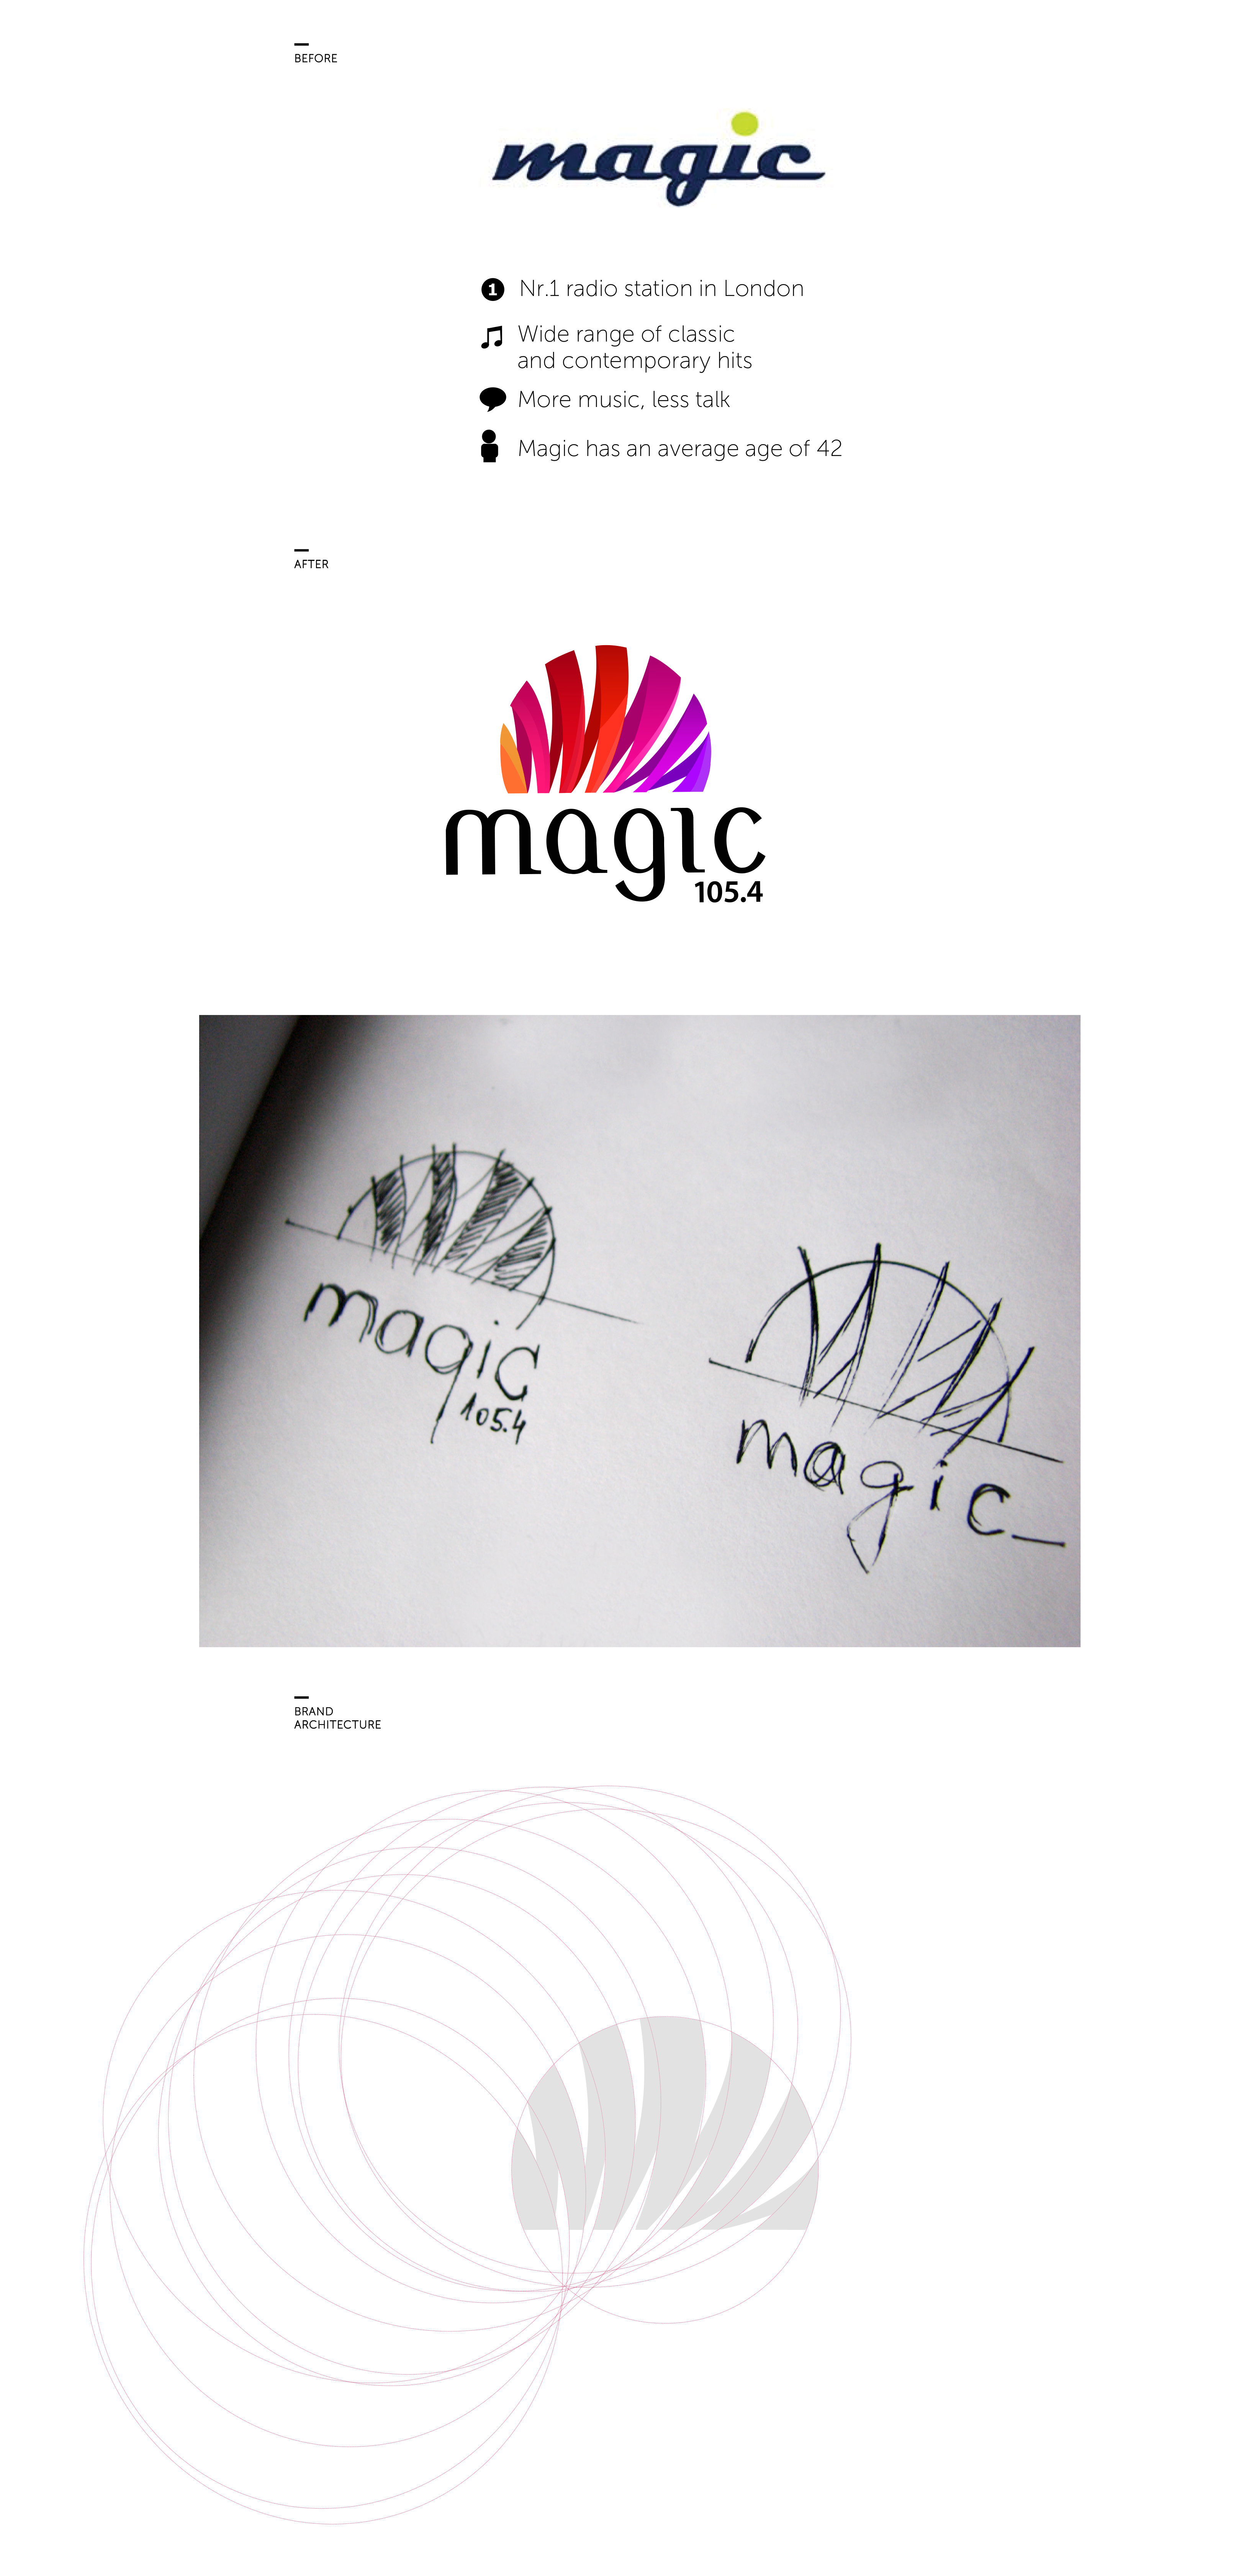 Magic Fm Radio London |Logo design